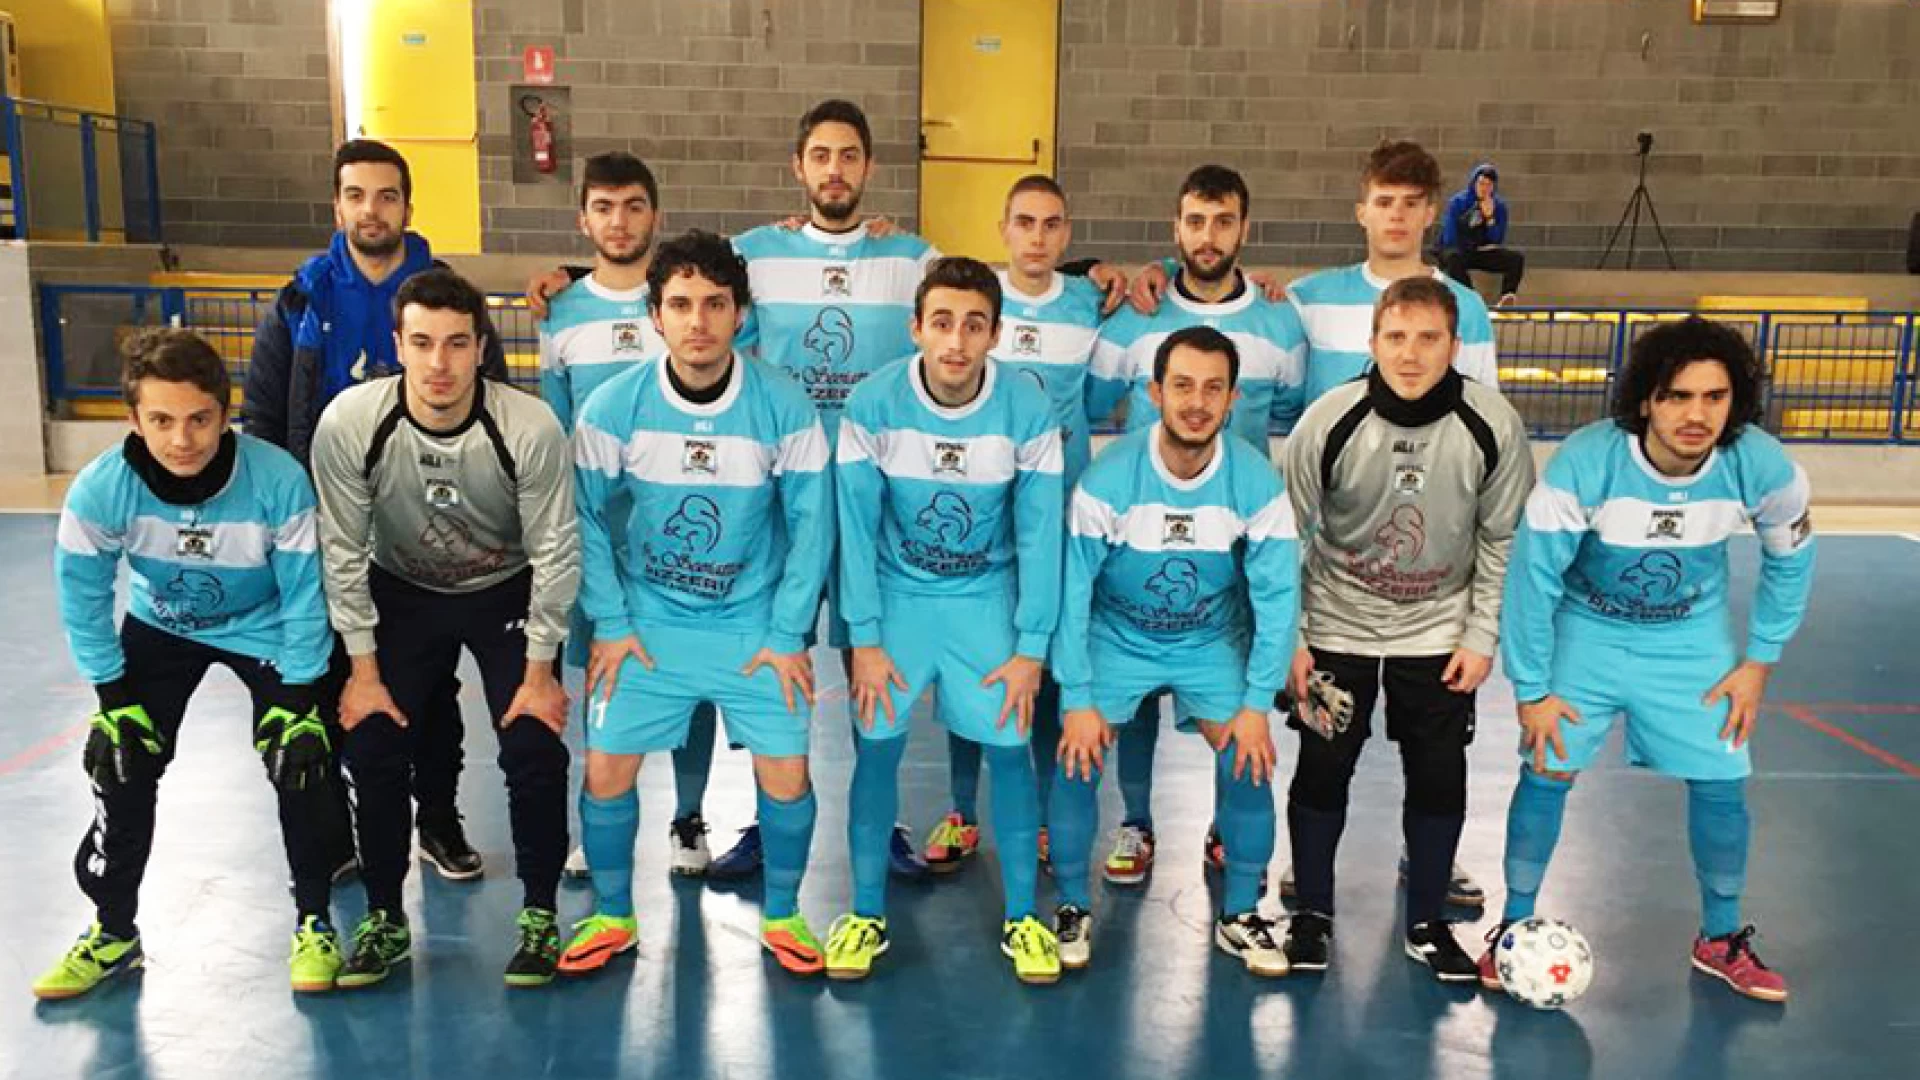 Calcio a 5 regionale, la Futsal Colli stende anche il Sesto Campano. Continua la corsa al vertice della classifica.